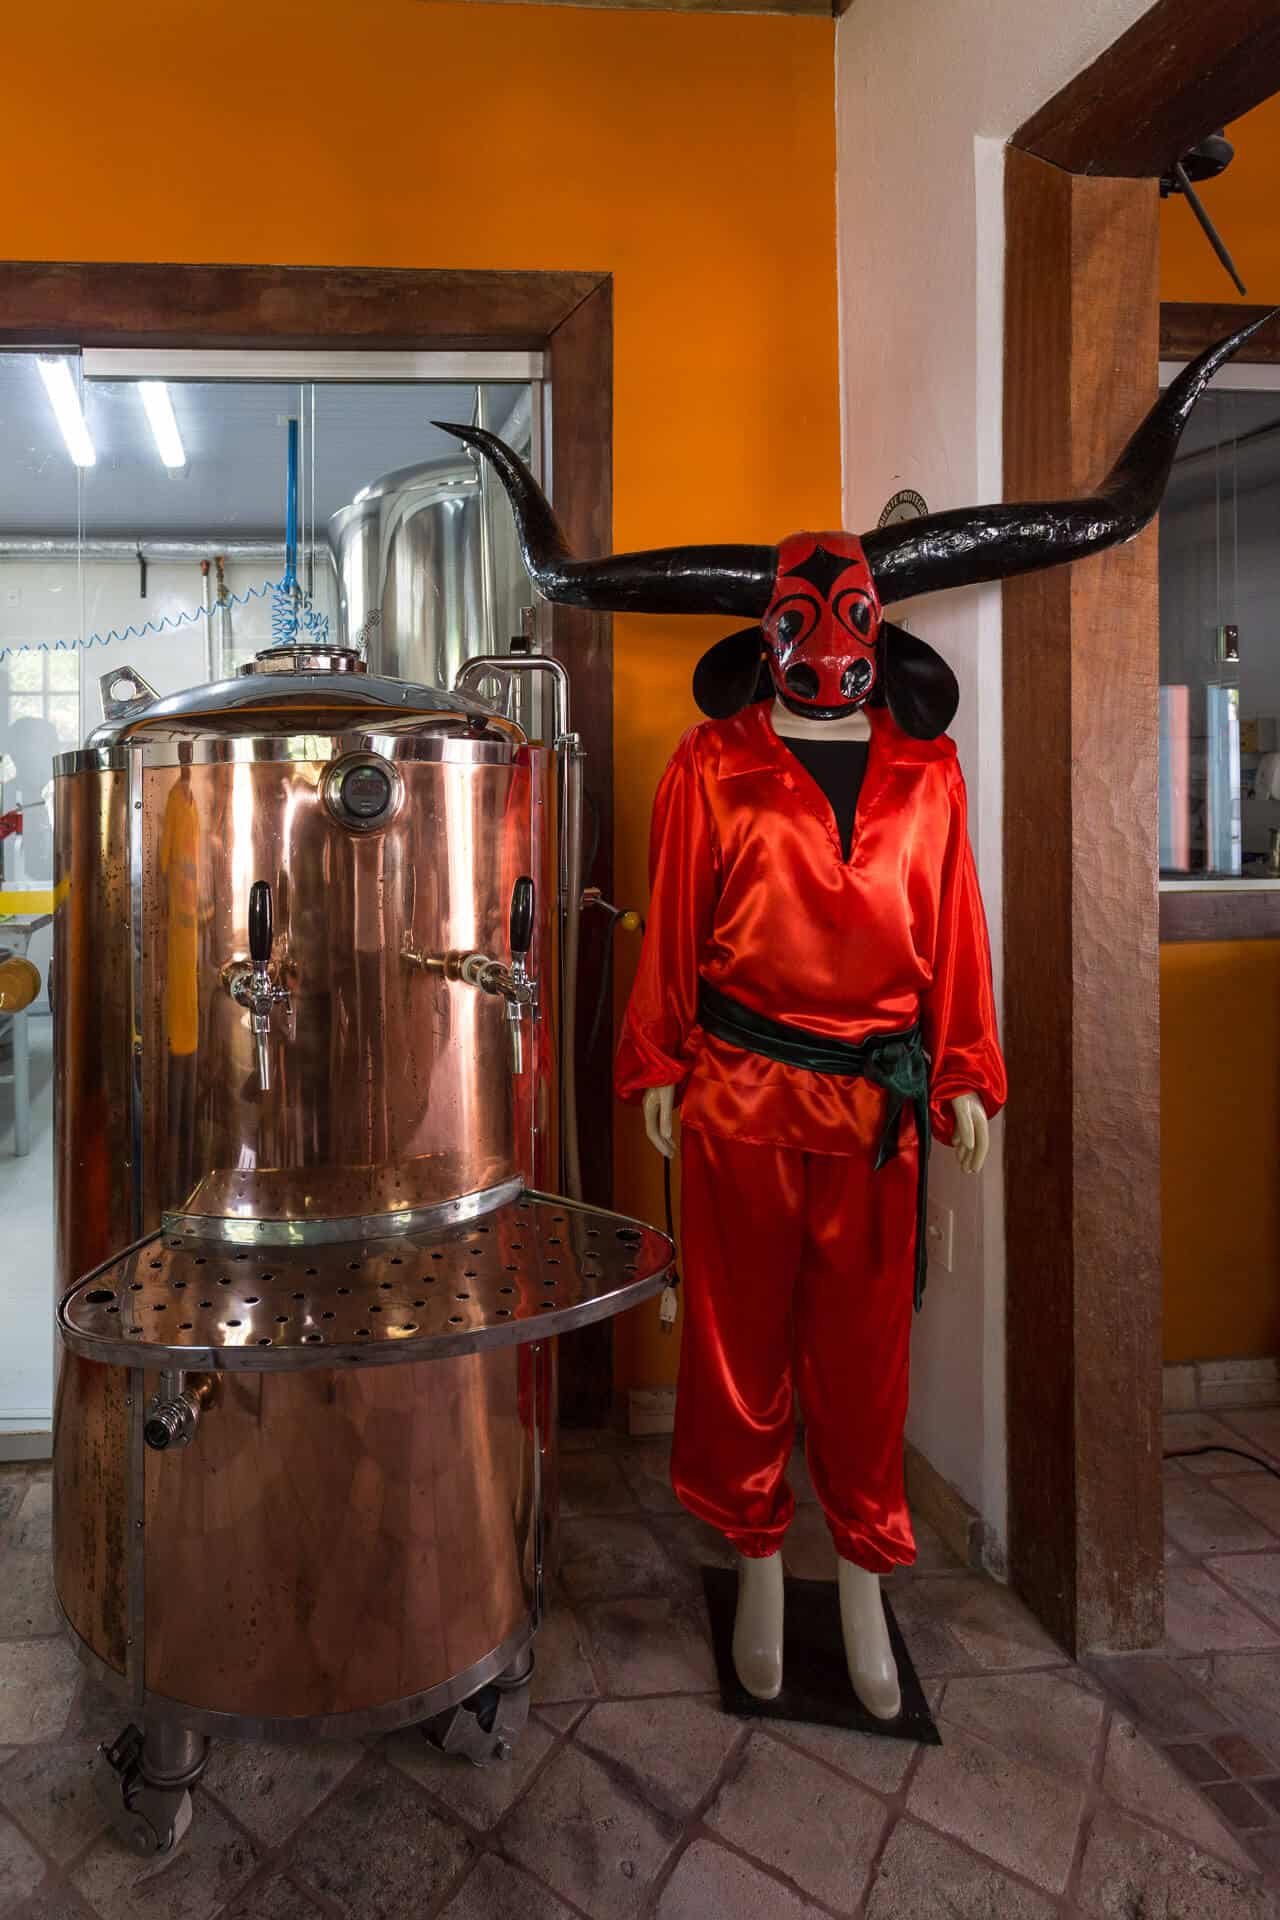 Santa Dica, a cerveja artesanal de Pirenópolis